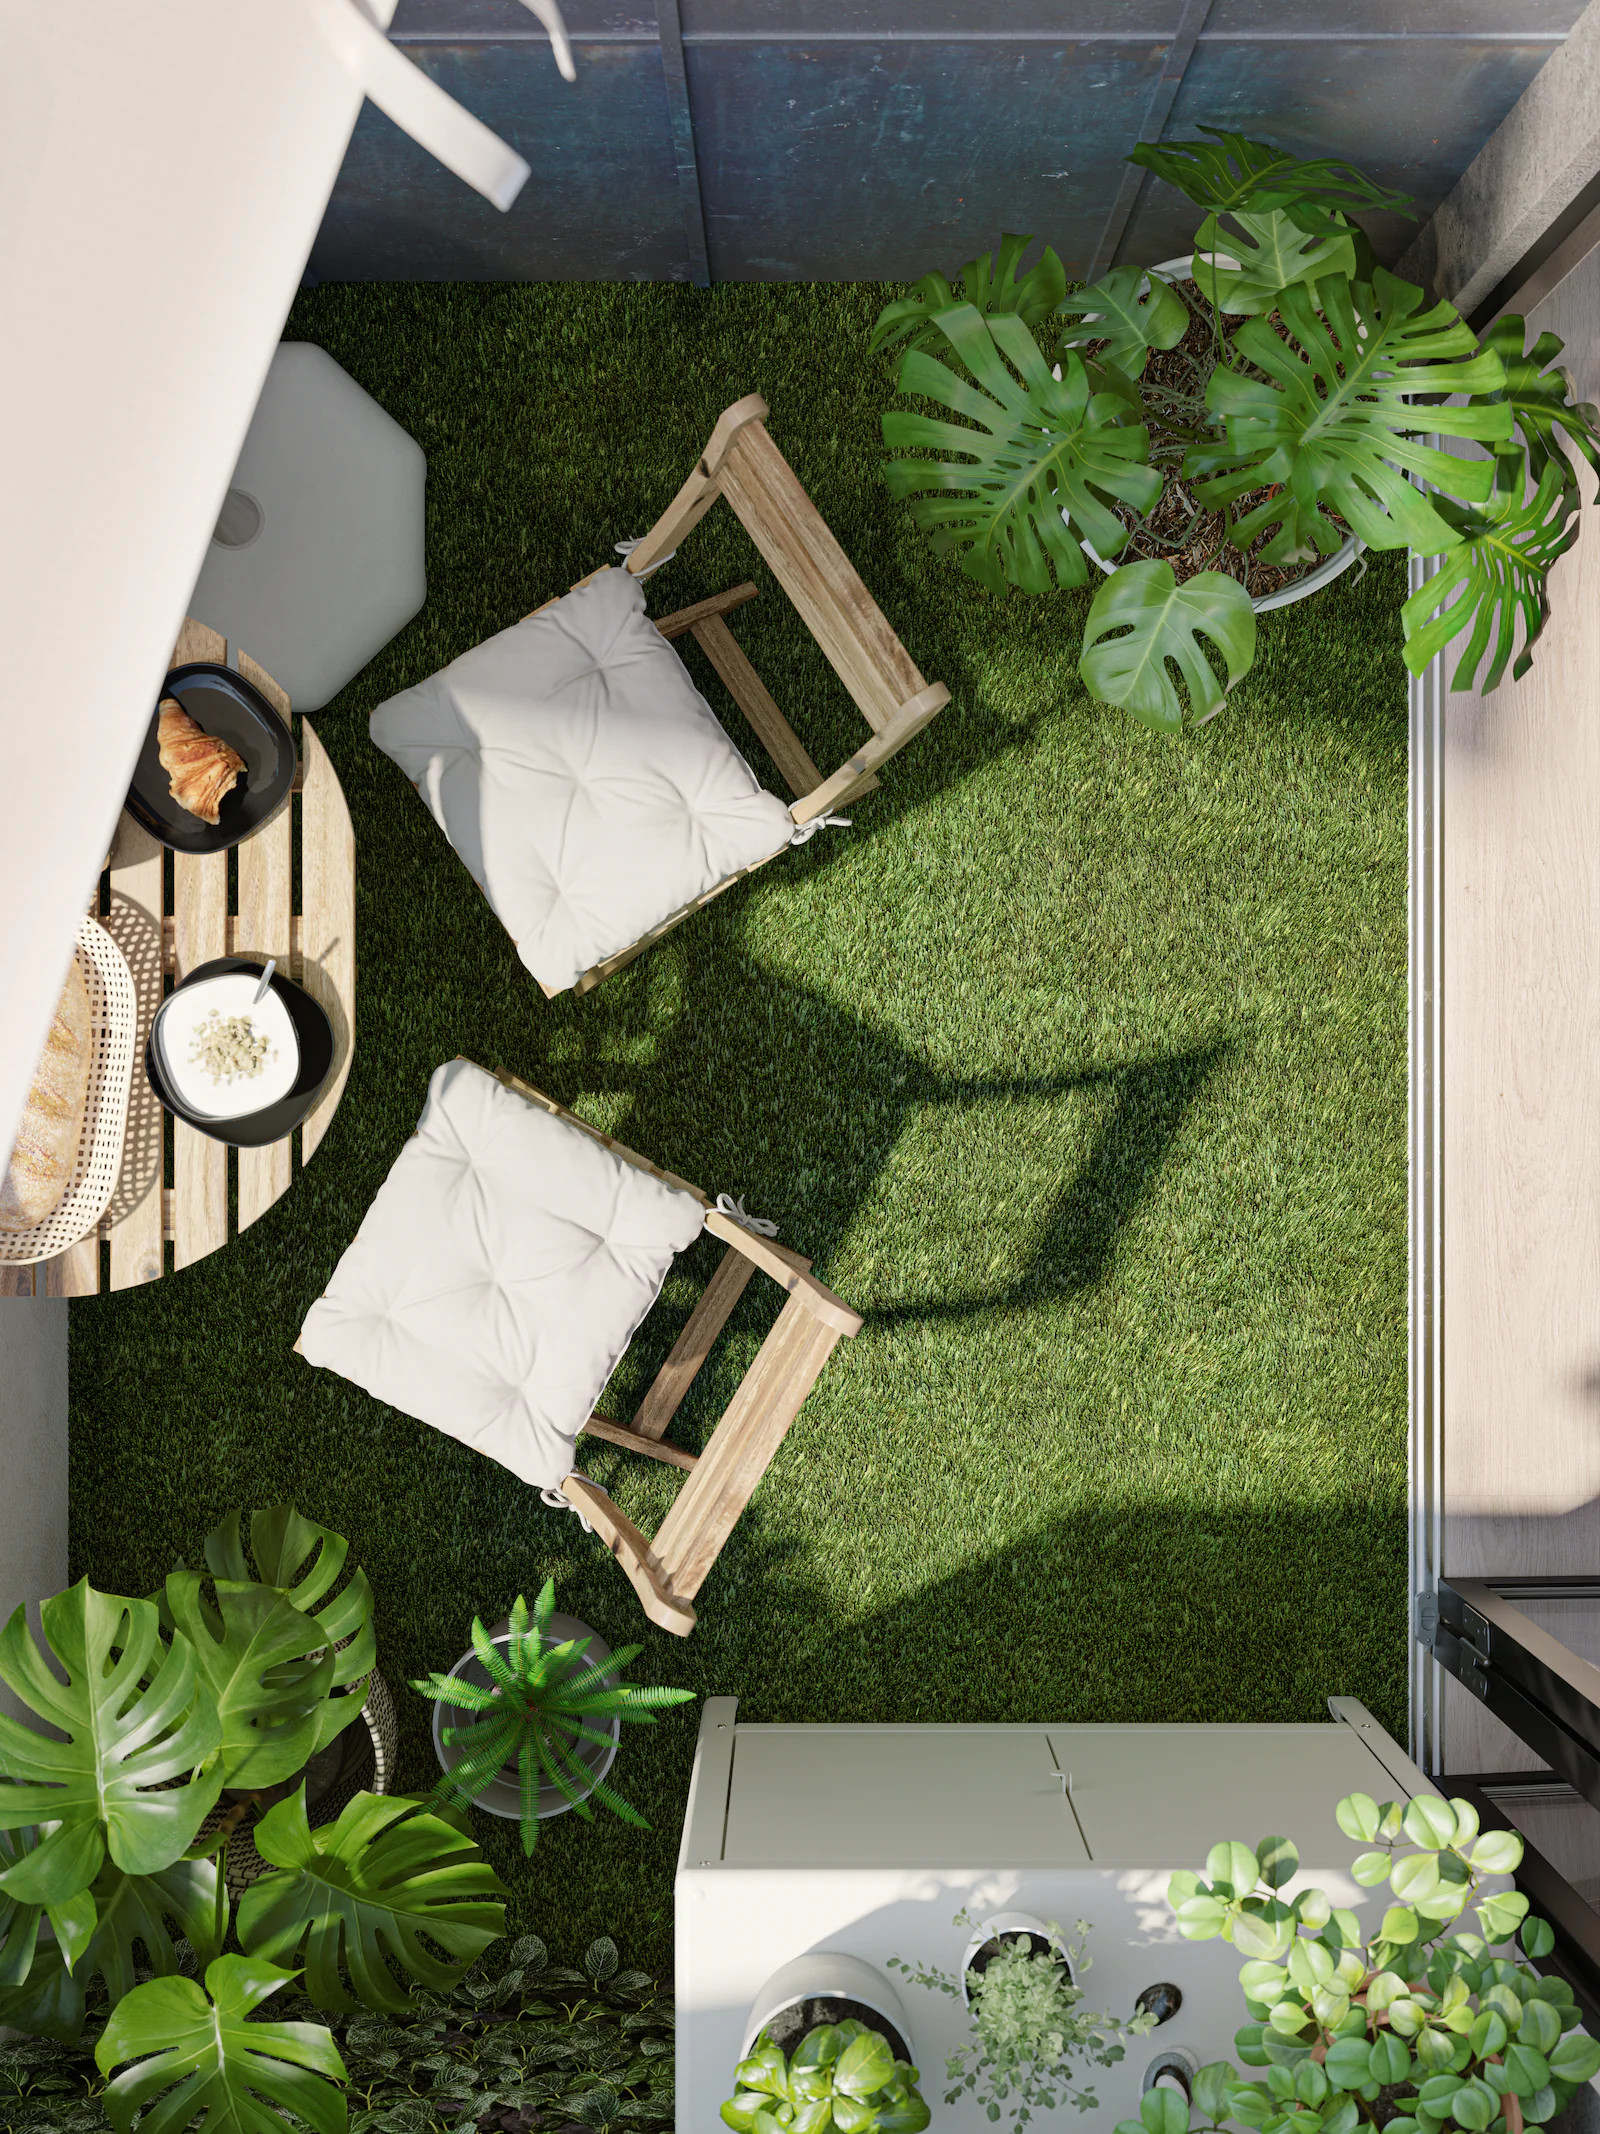 Ikea : Créez votre propre mur végétal à moins de 40 euros grâce au